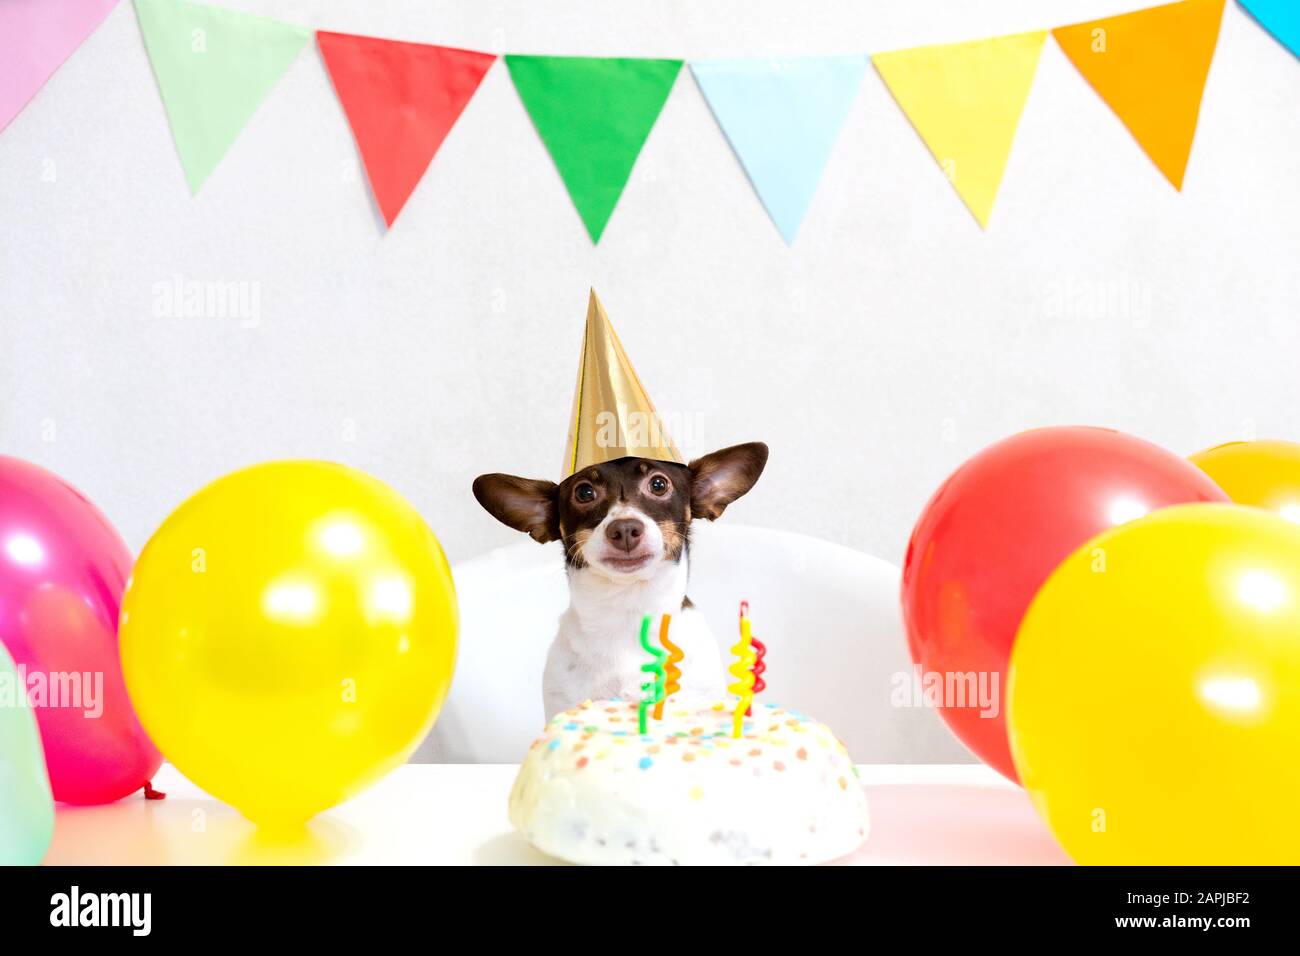 Süßer kleiner lustiger Hund mit Geburtstagskuchen und einem Party-Karneval-Hut, der seinen Geburtstag feiert. Alles gute zum Geburtstag. Häusliches Tierliebe- und Verwöhnkonzept. Stockfoto